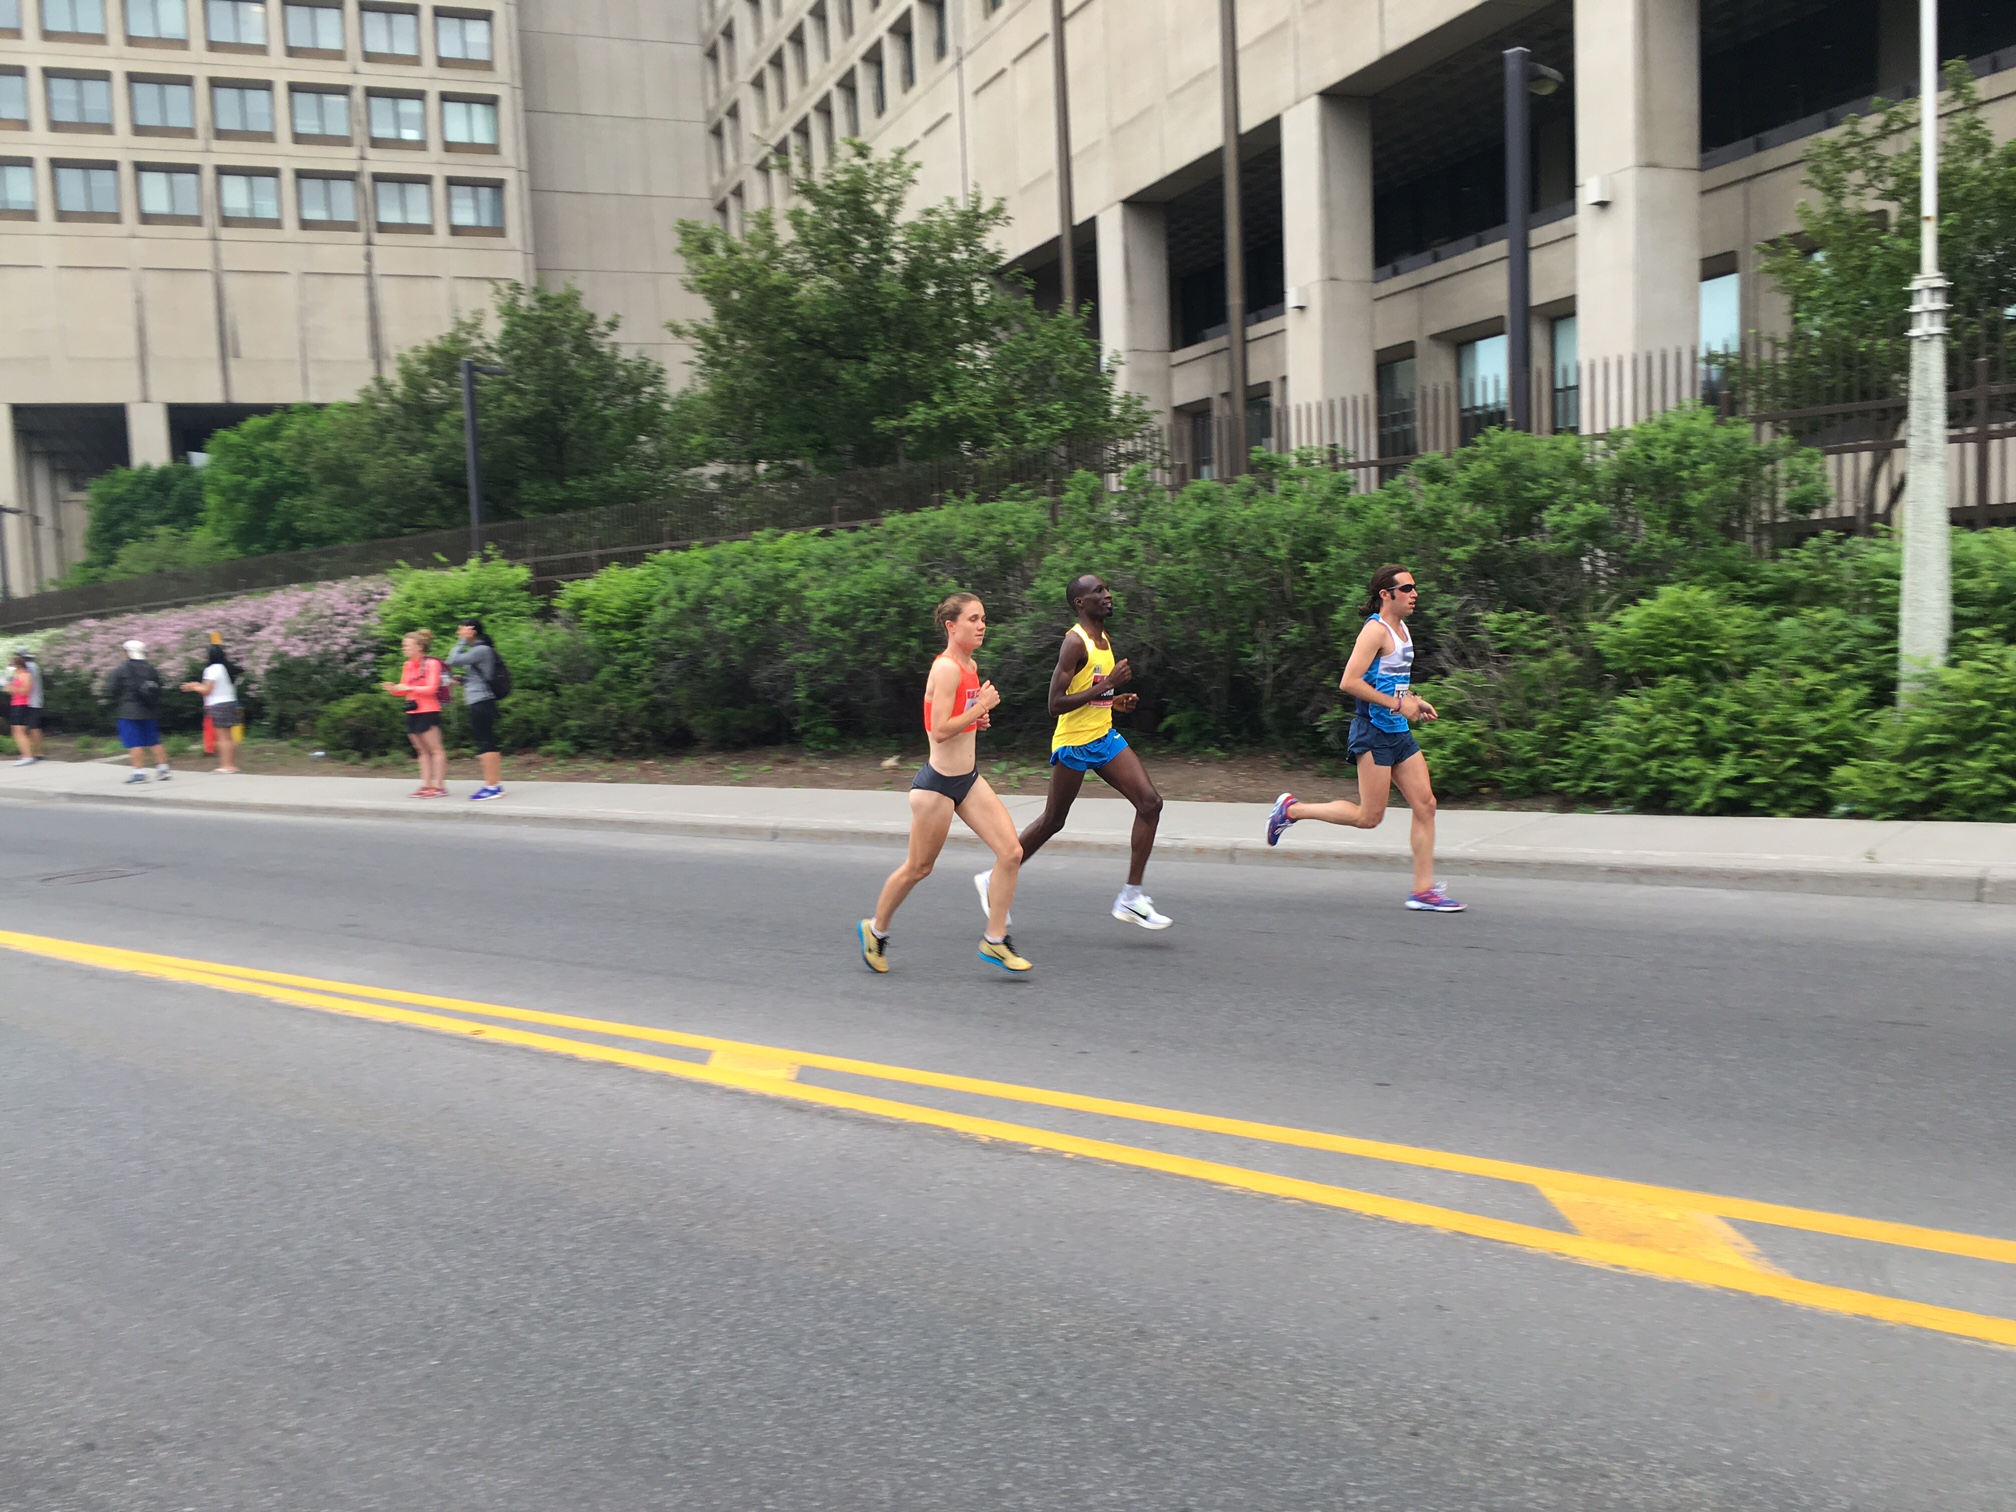 Ottawa marathon